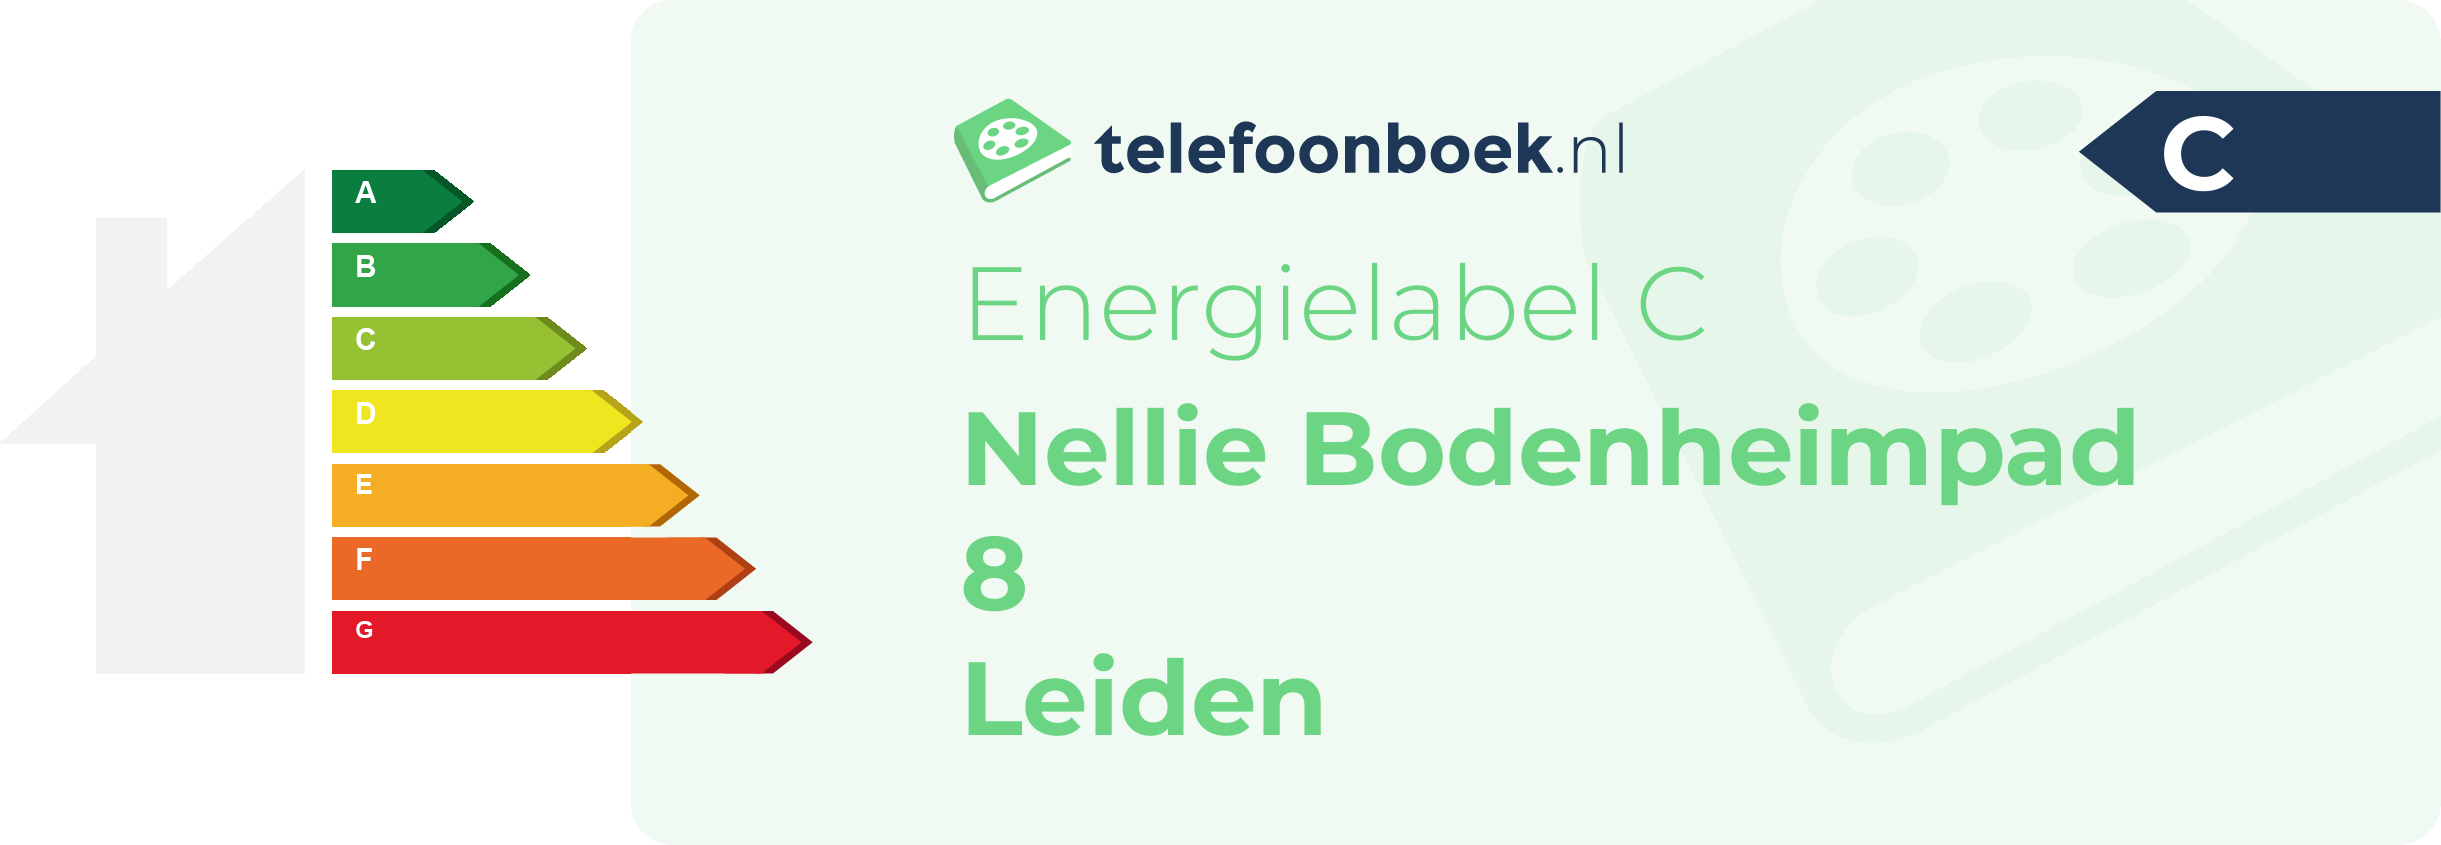 Energielabel Nellie Bodenheimpad 8 Leiden